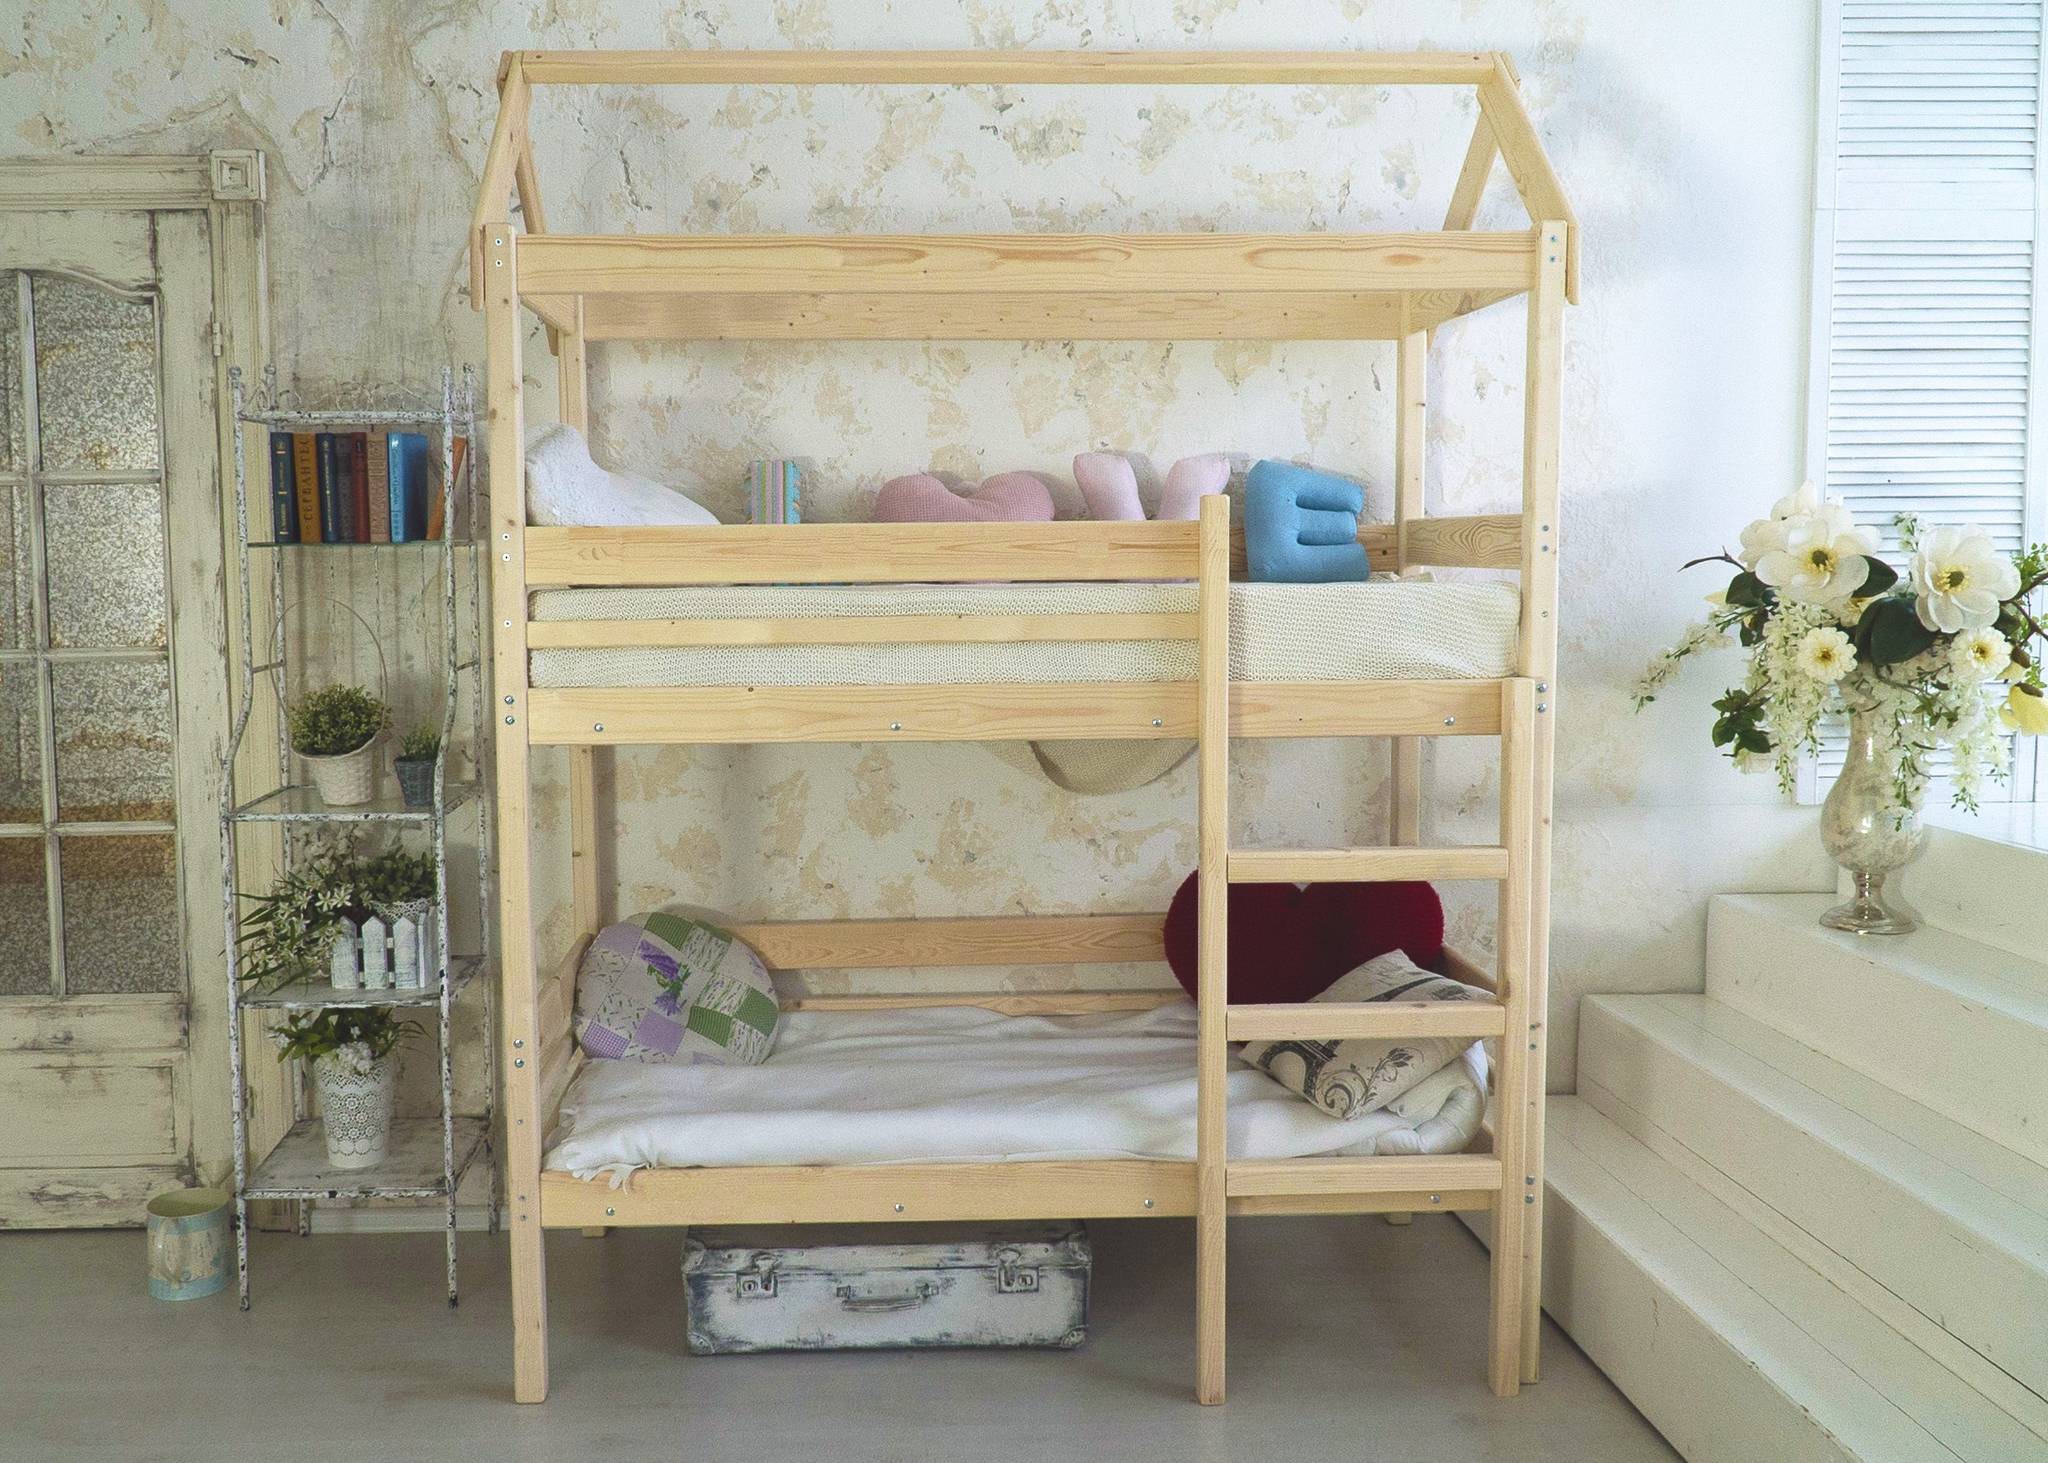 Двухъярусная кровать из дерева с высокими бортиками для детей